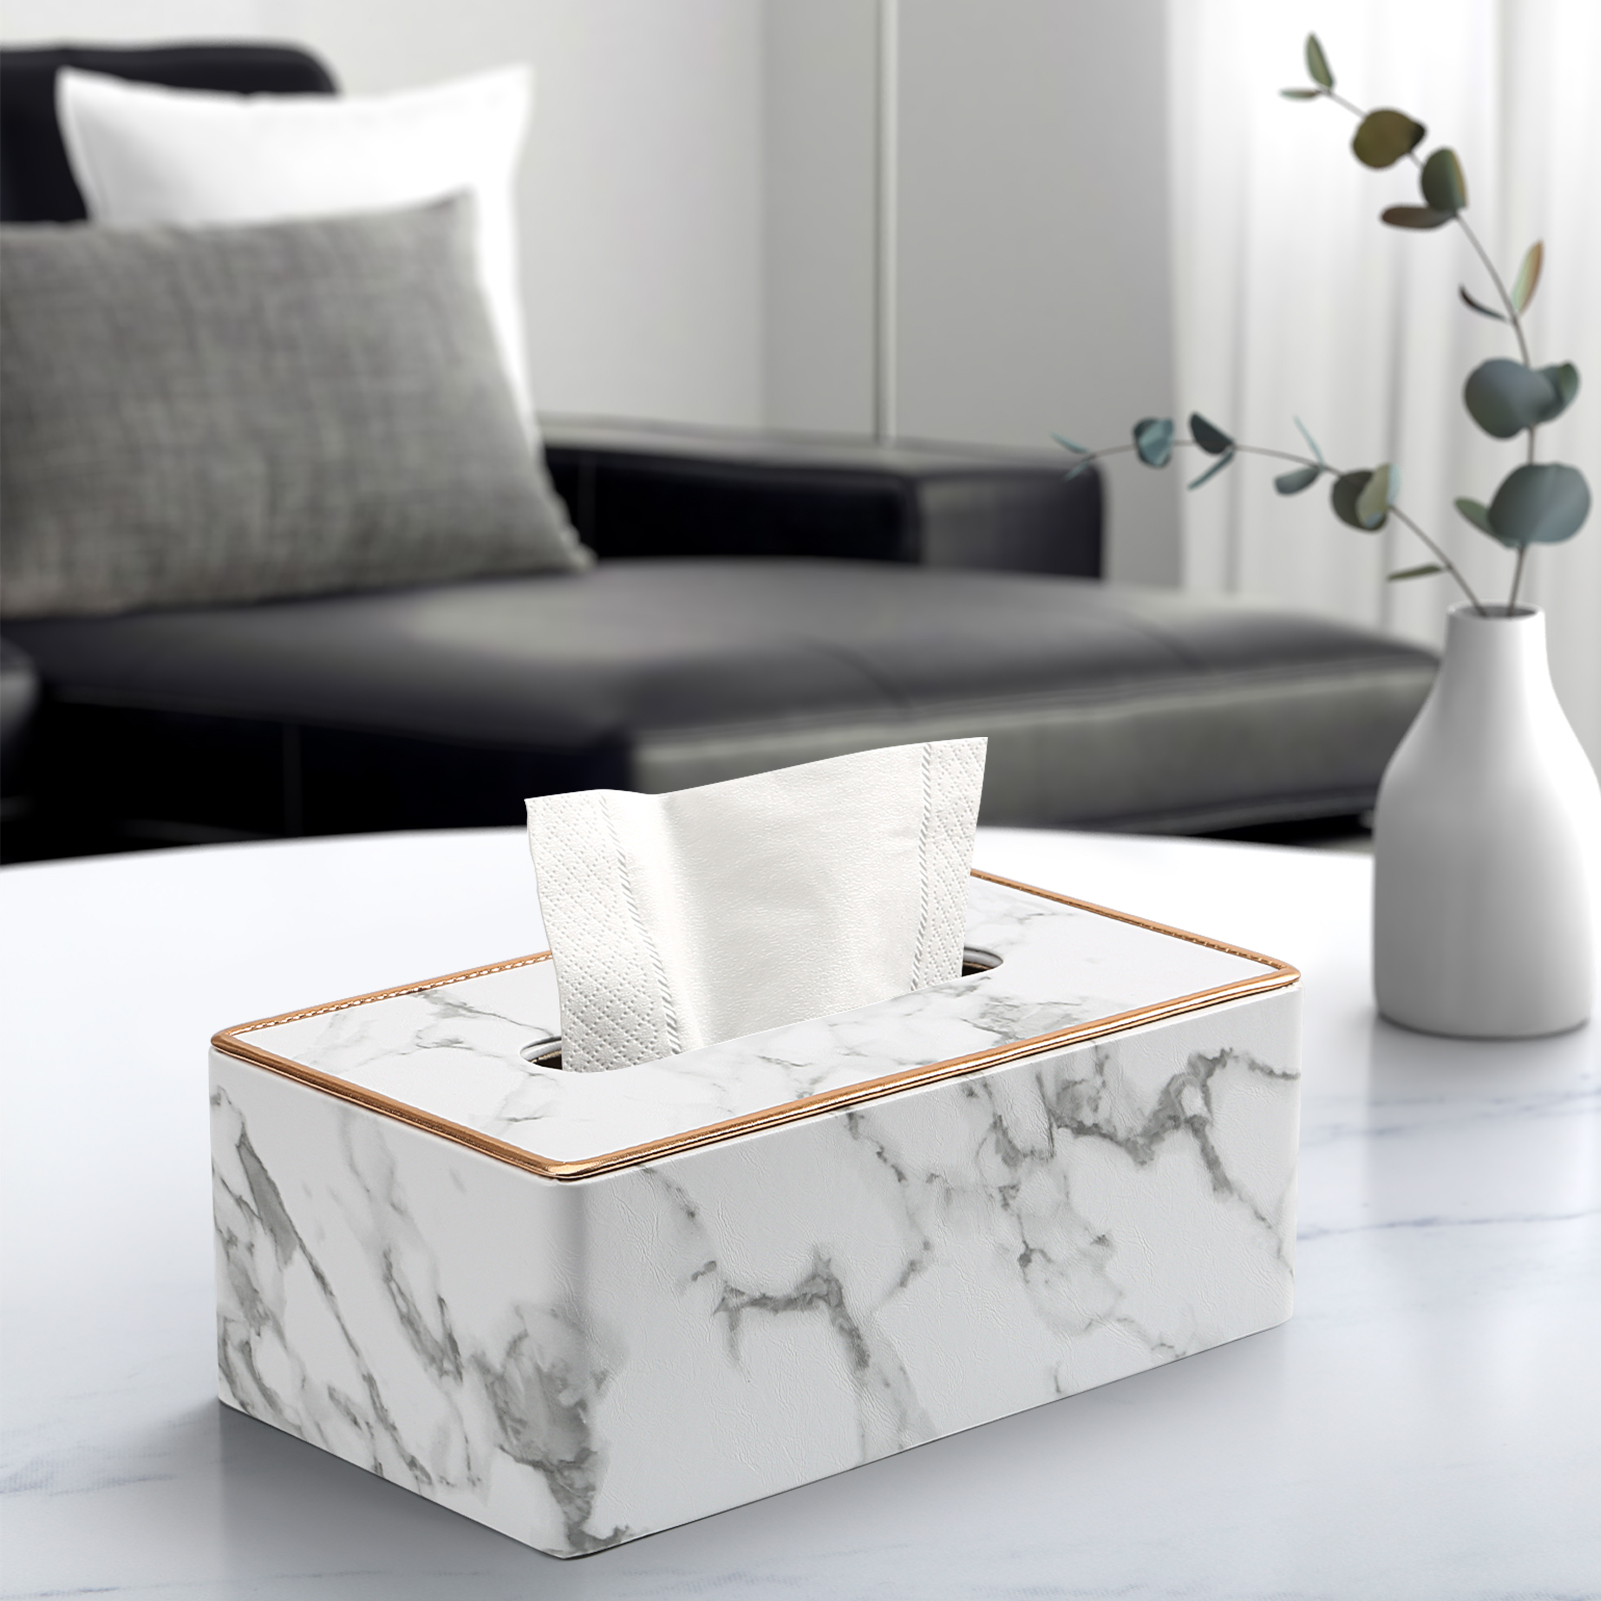 大号皮革纸巾盒创意家居客厅餐厅酒店通用抽纸盒可定制LOGO纸巾盒